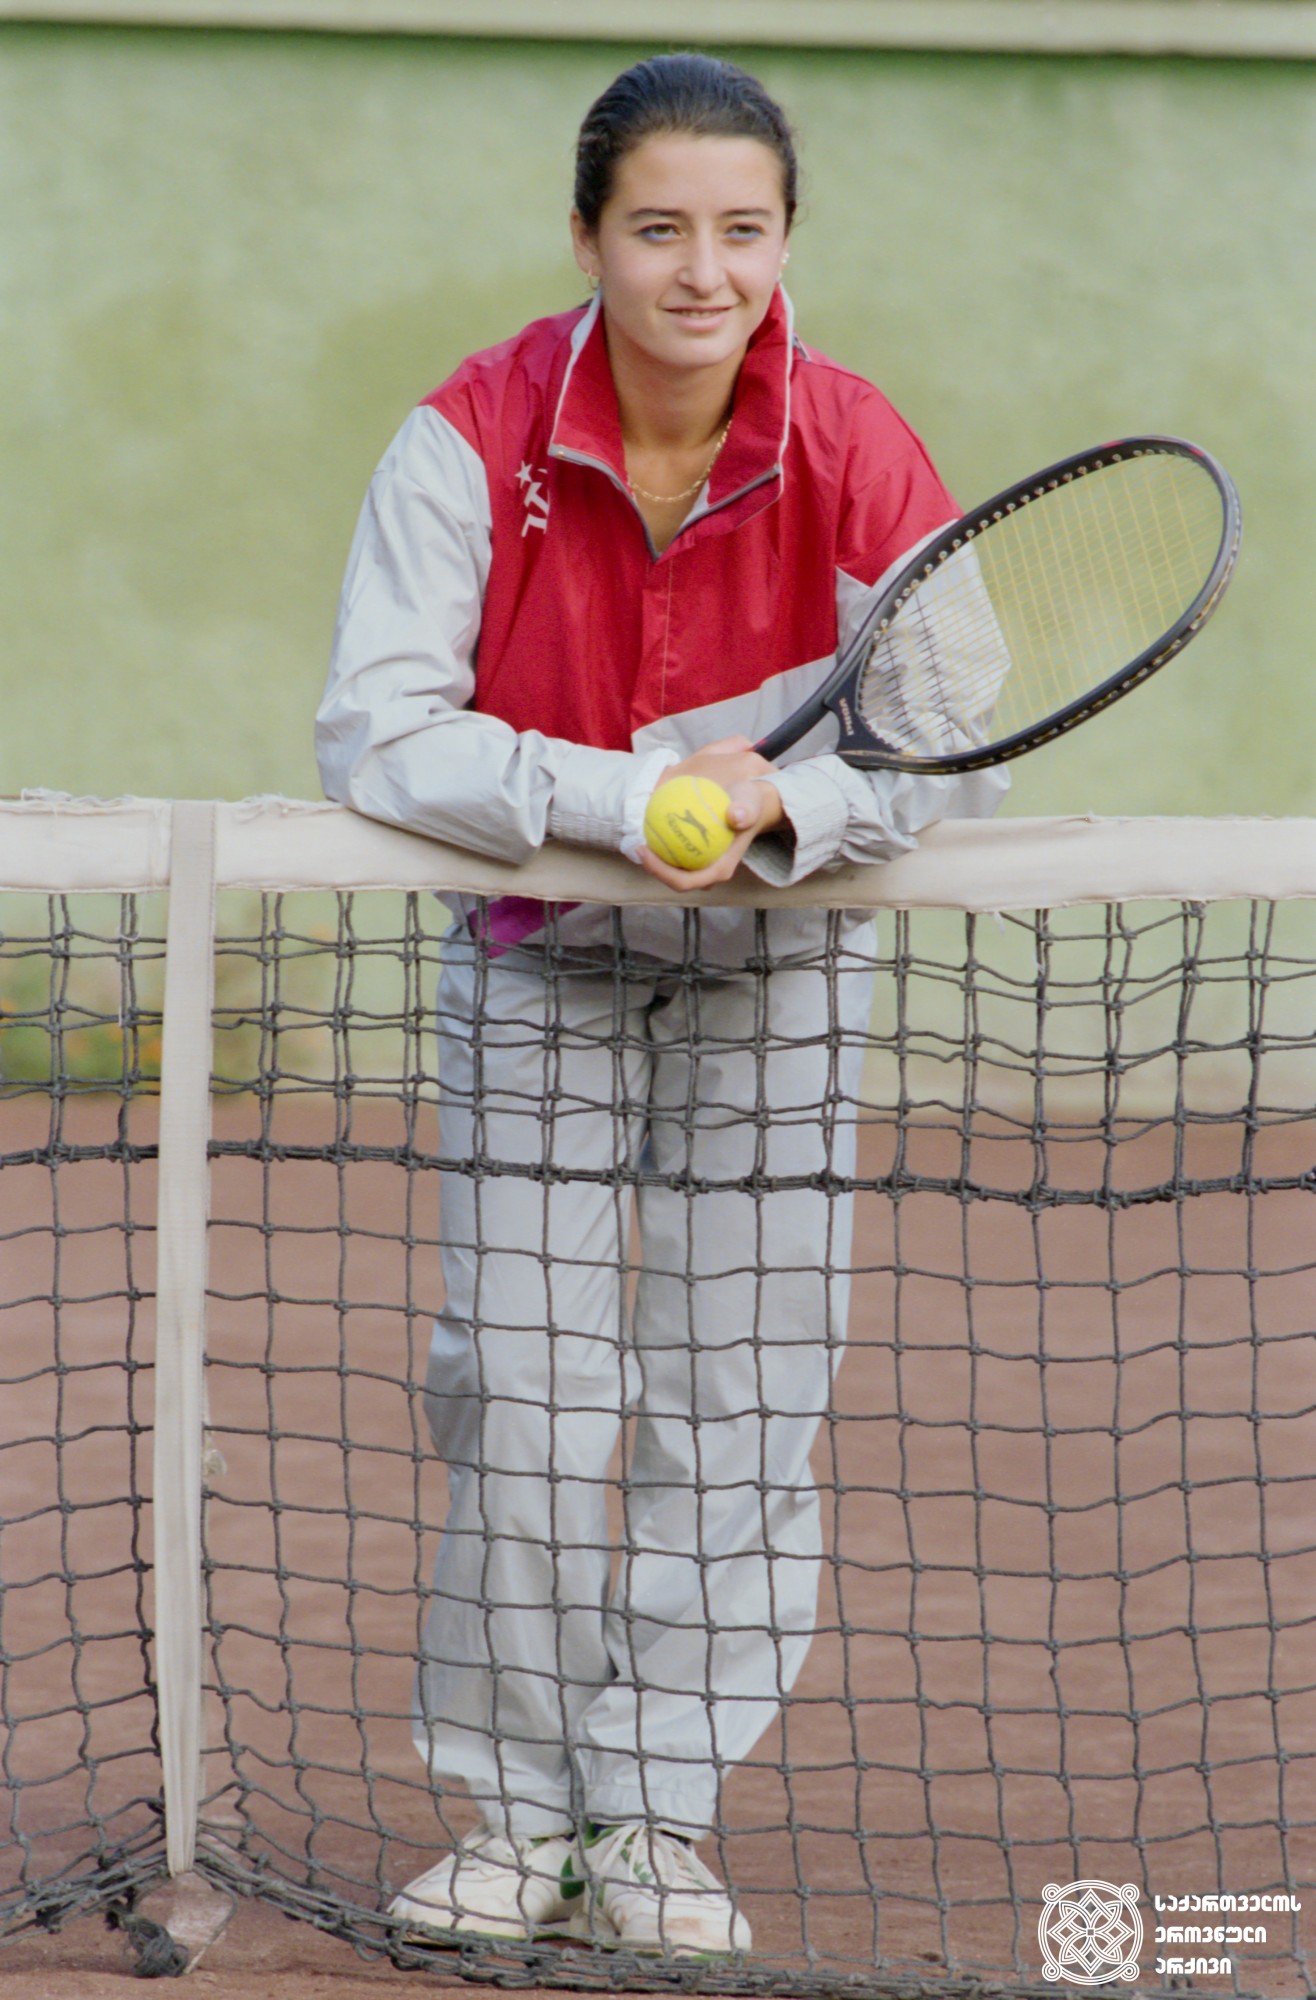 ლეილა მესხი. <br>
1988 წელი. <br>
XXV ოლიმპიური თამაშების მესამე პრიზიორი ჩოგბურთში, წყვილთა თანრიგში (1992 წელი, ბარსელონა). <br>
Leila Meskhi. <br>
1988. <br>
Third-prize winner of the XXV Olympic Games in doubles, Tennis (1992, Barcelona).